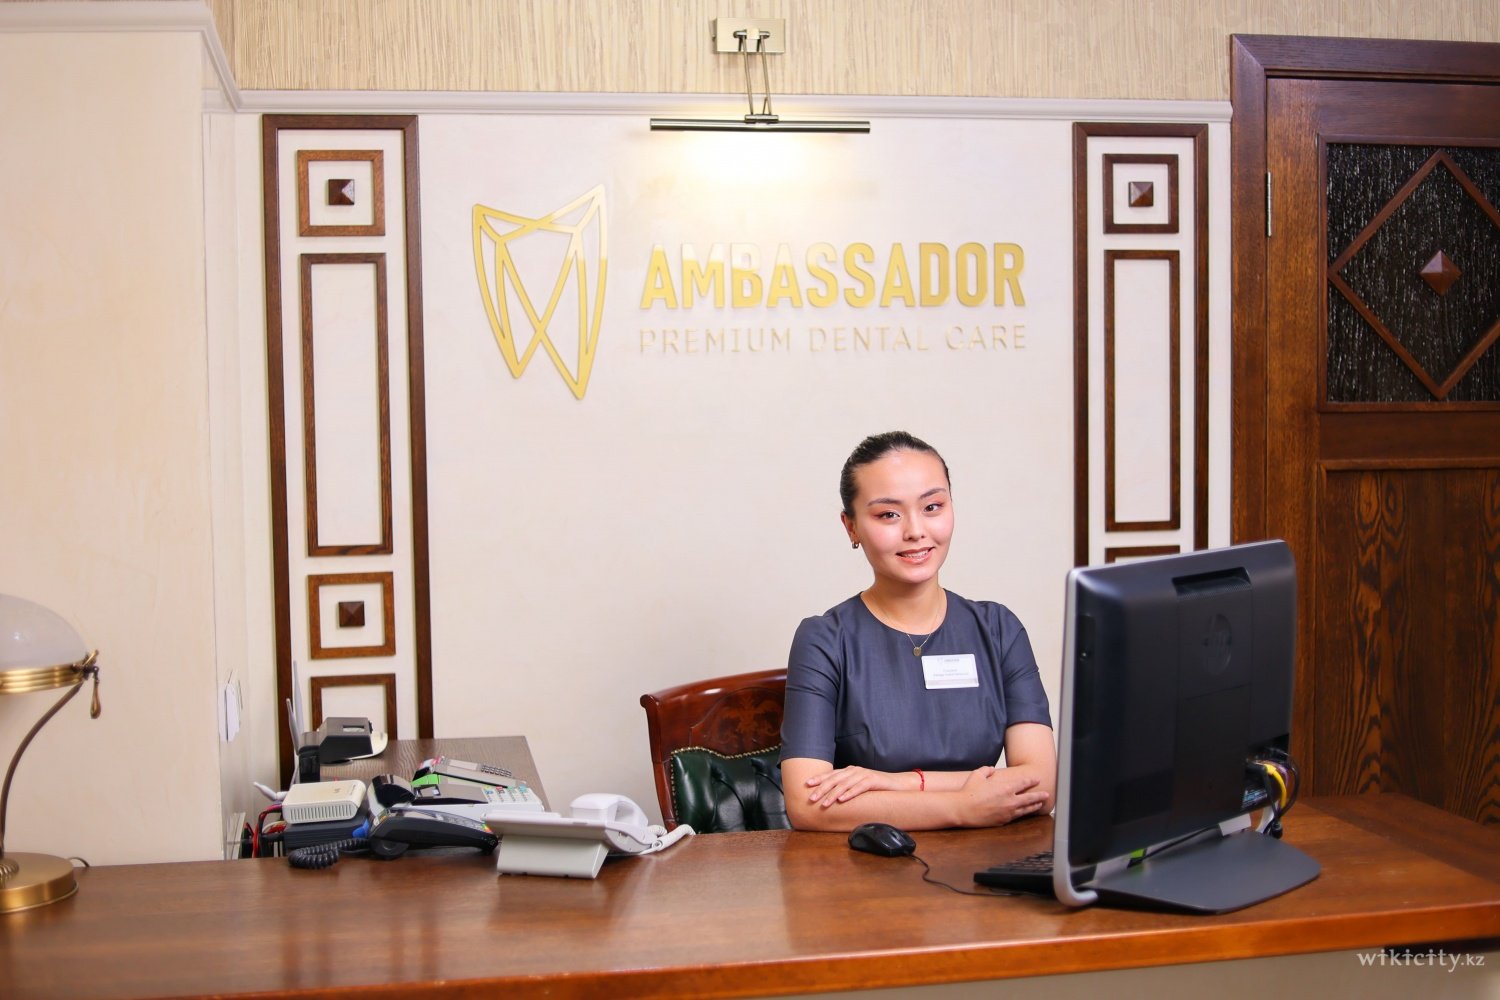 Фото Ambassador - Астана